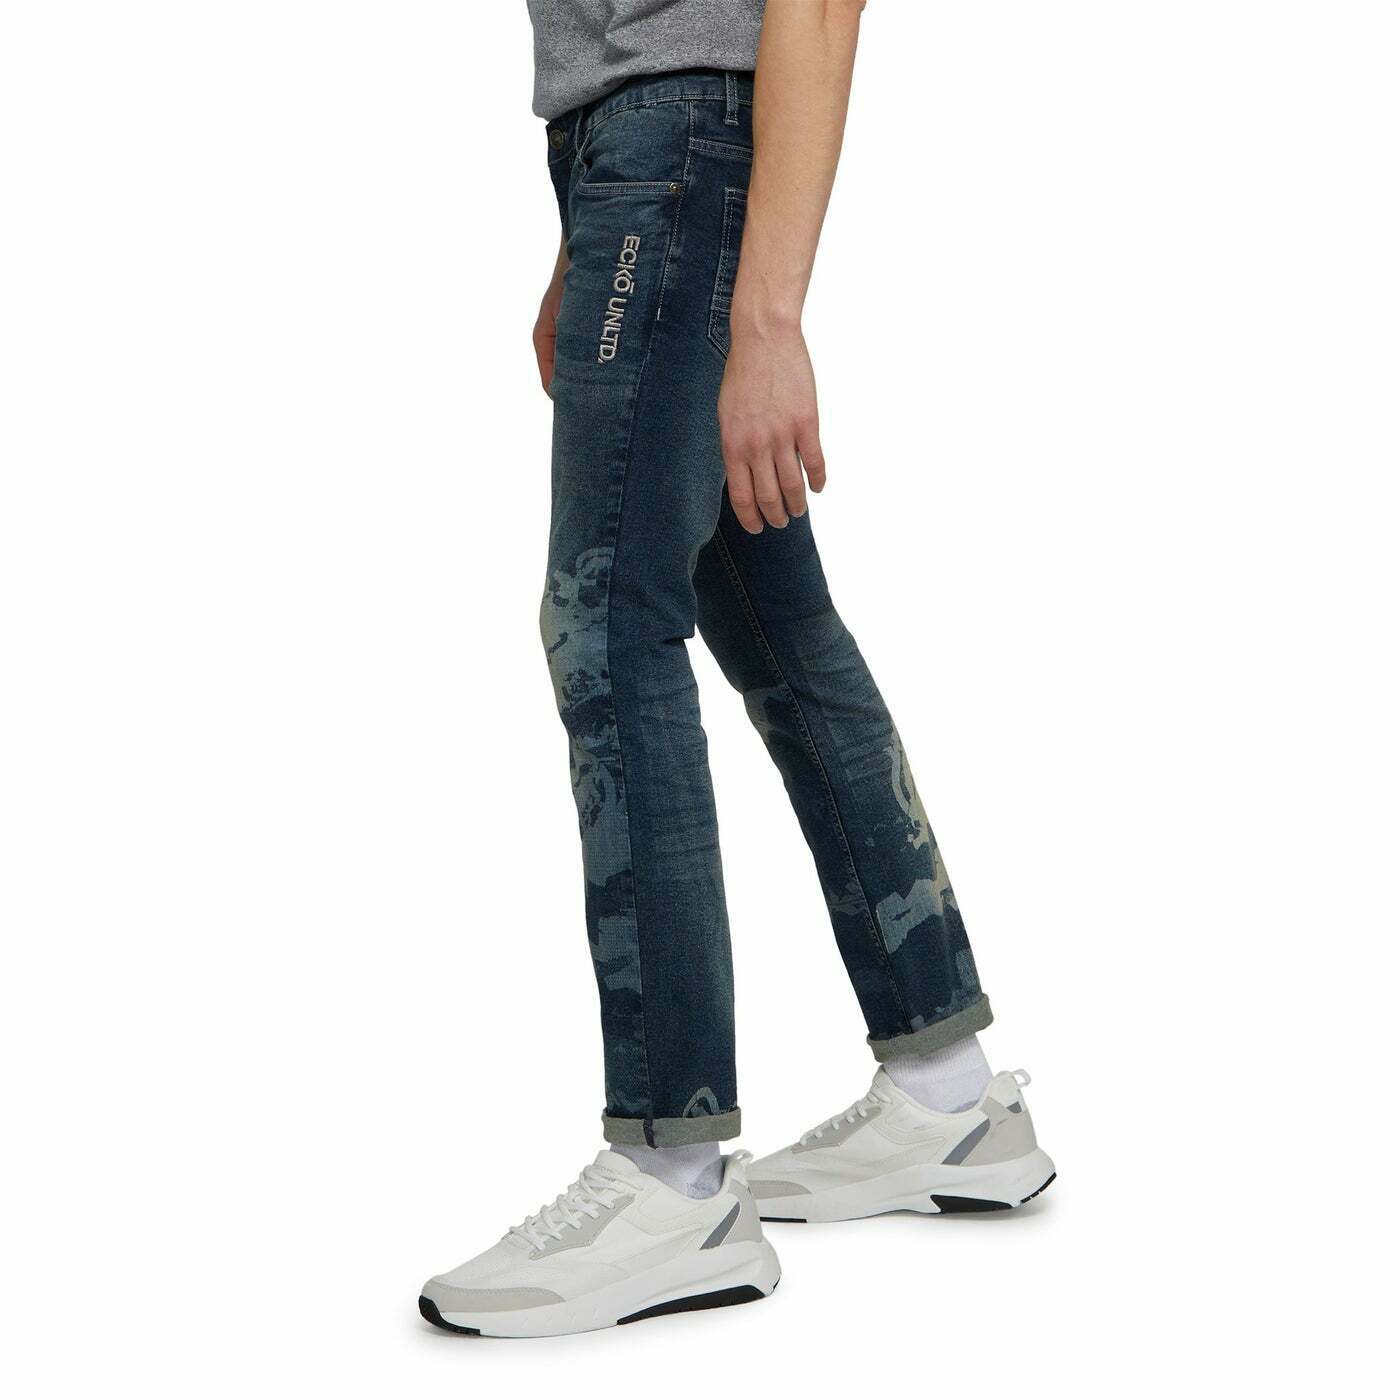 Men’s Ecko Unltd Rhino Wrap Stretch Jeans Skinny Fit Blue Size 36 x 30